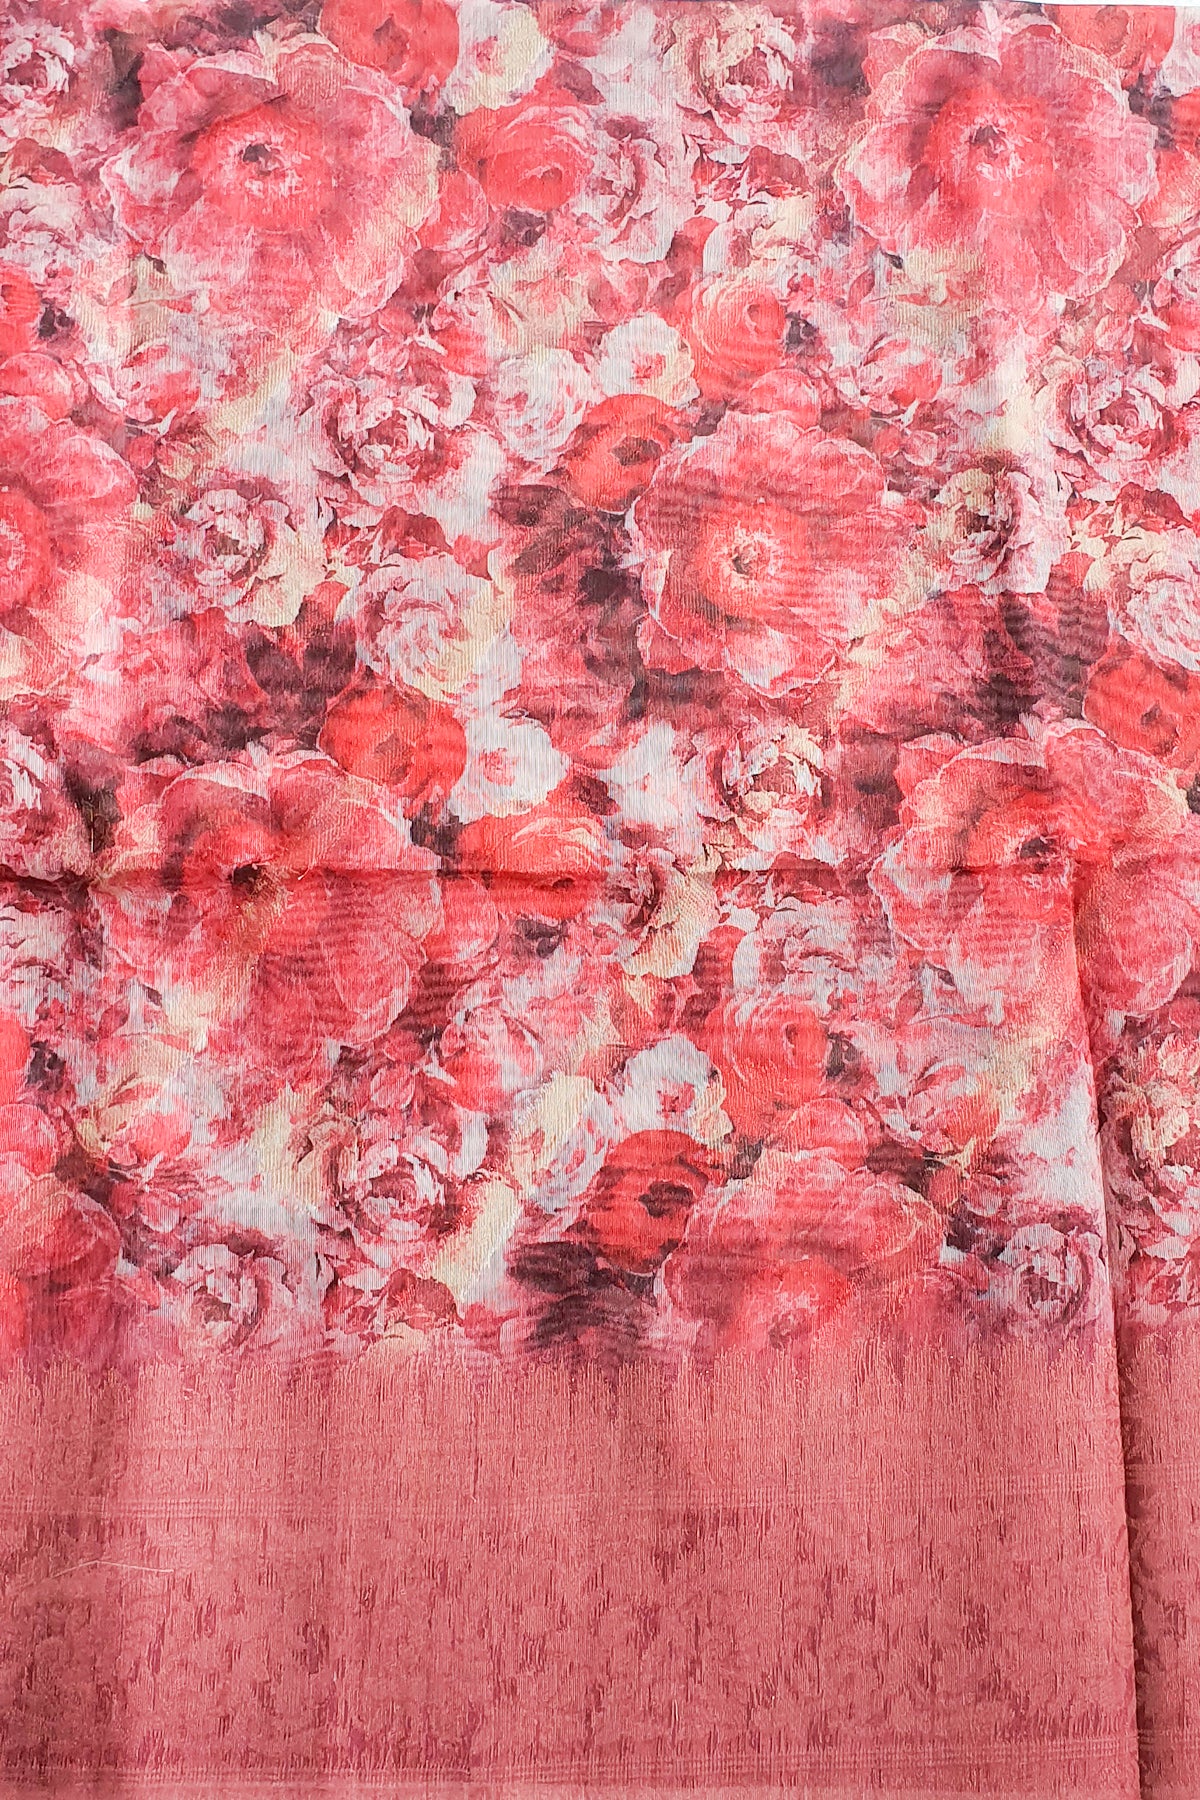 Gajari Kora Silk Floral Printed Woven Sari